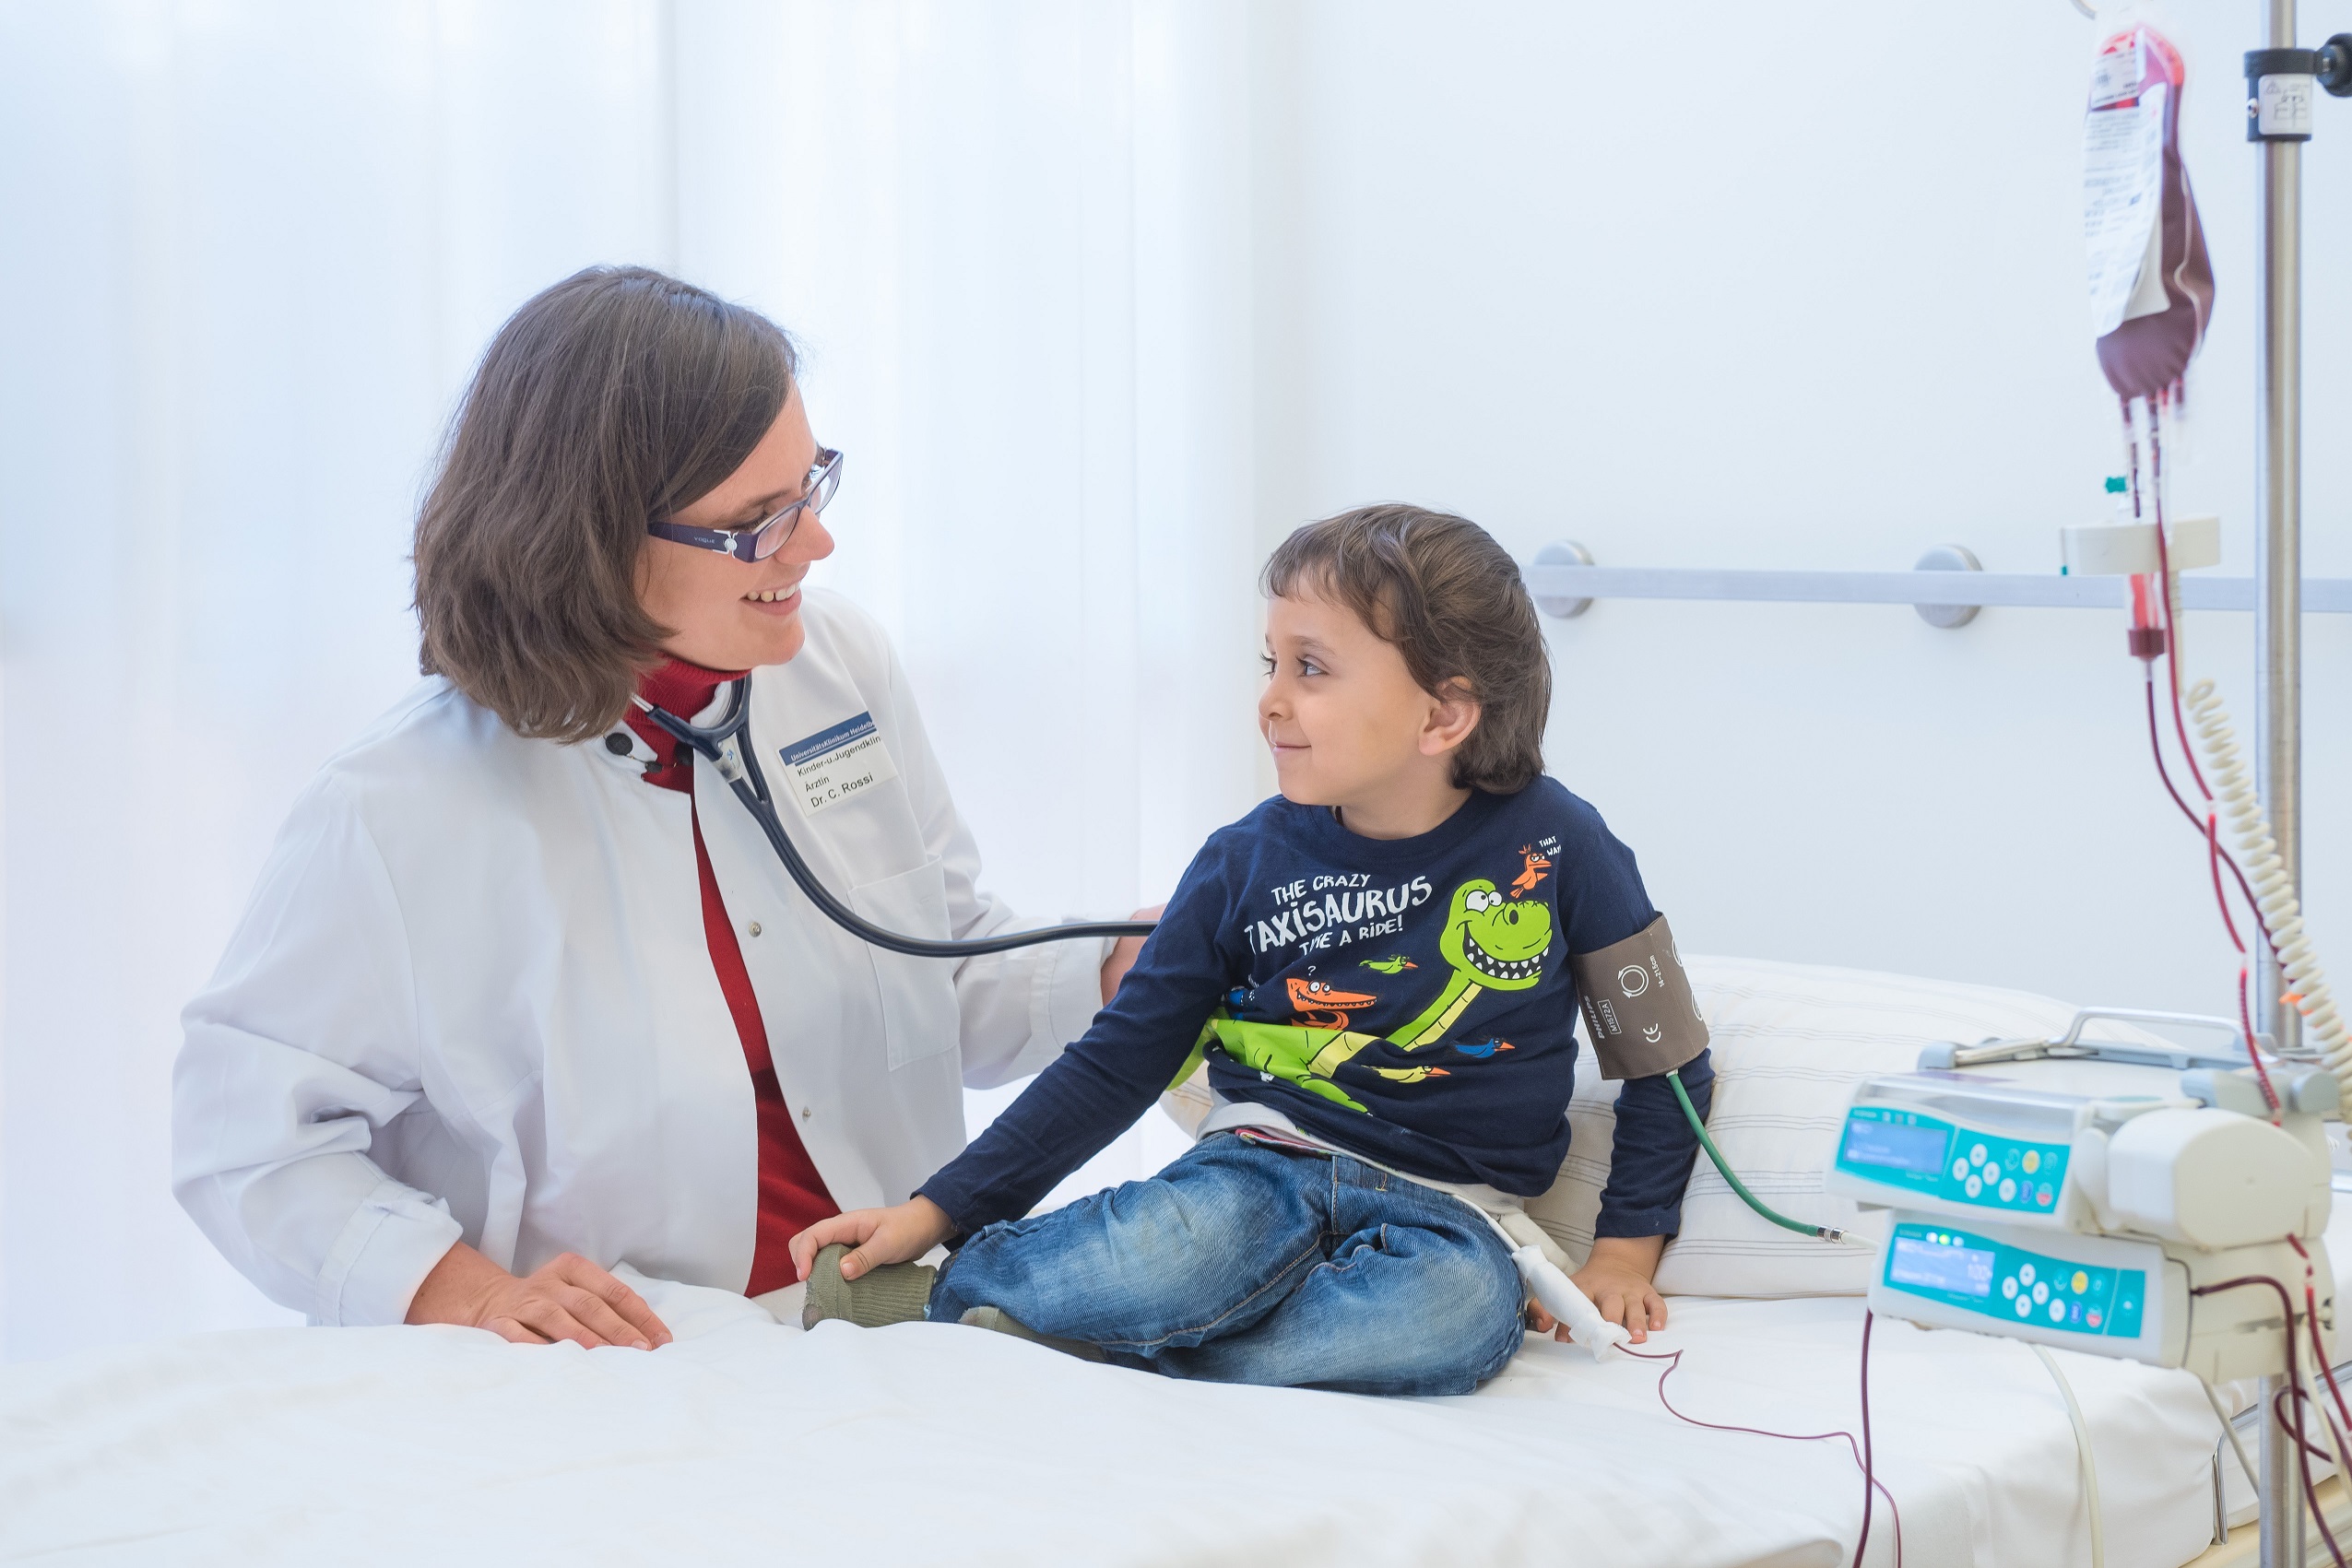 Ärztin mit Kind © Universitätsklinikum Heidelberg